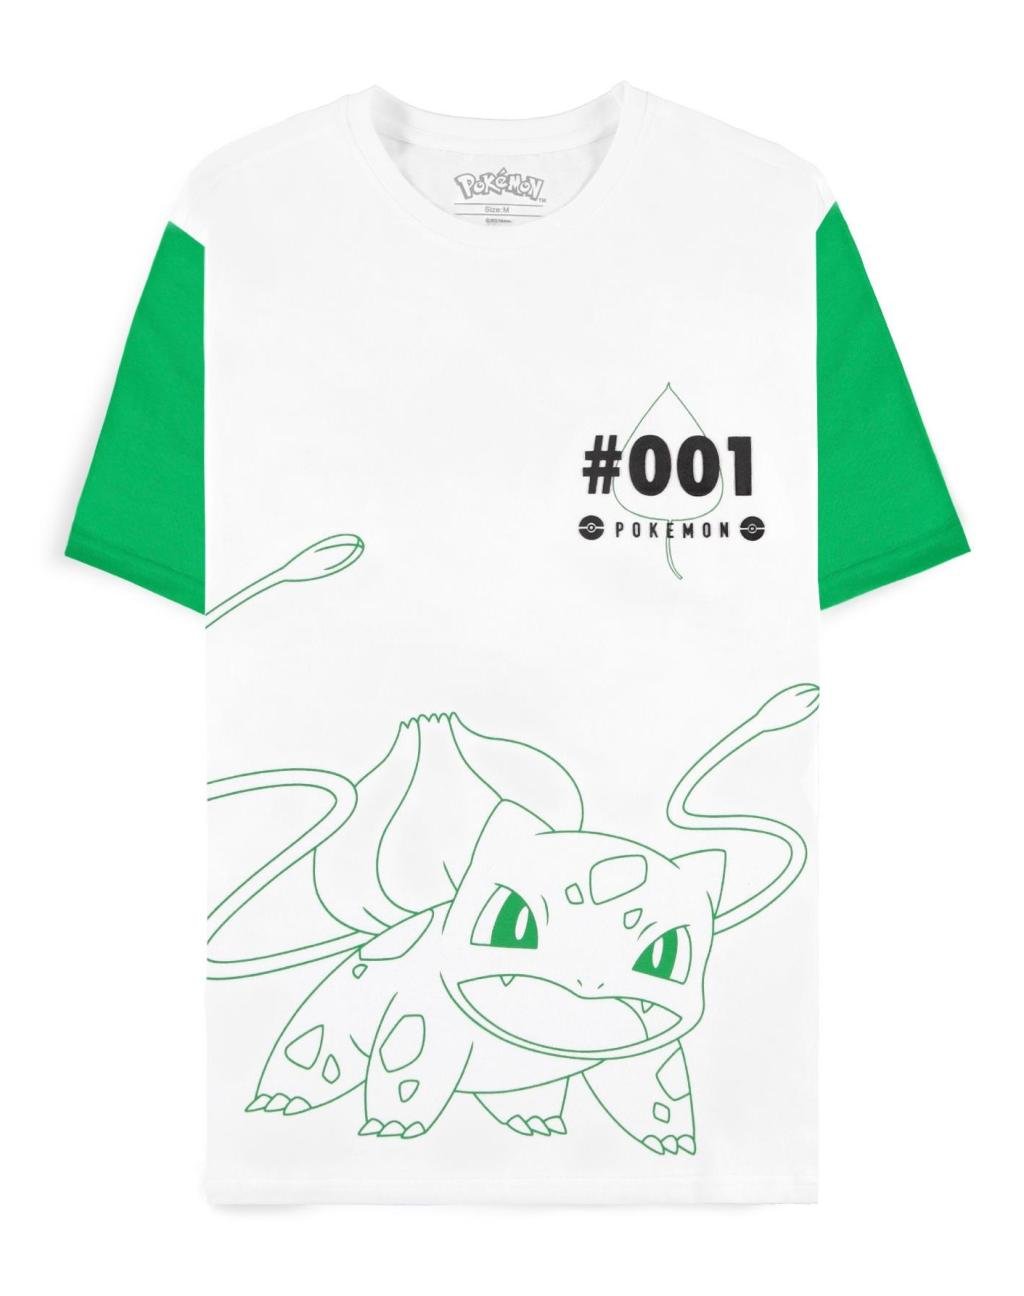 POKEMON - Bulbasaur - Men's T-shirt (XS)